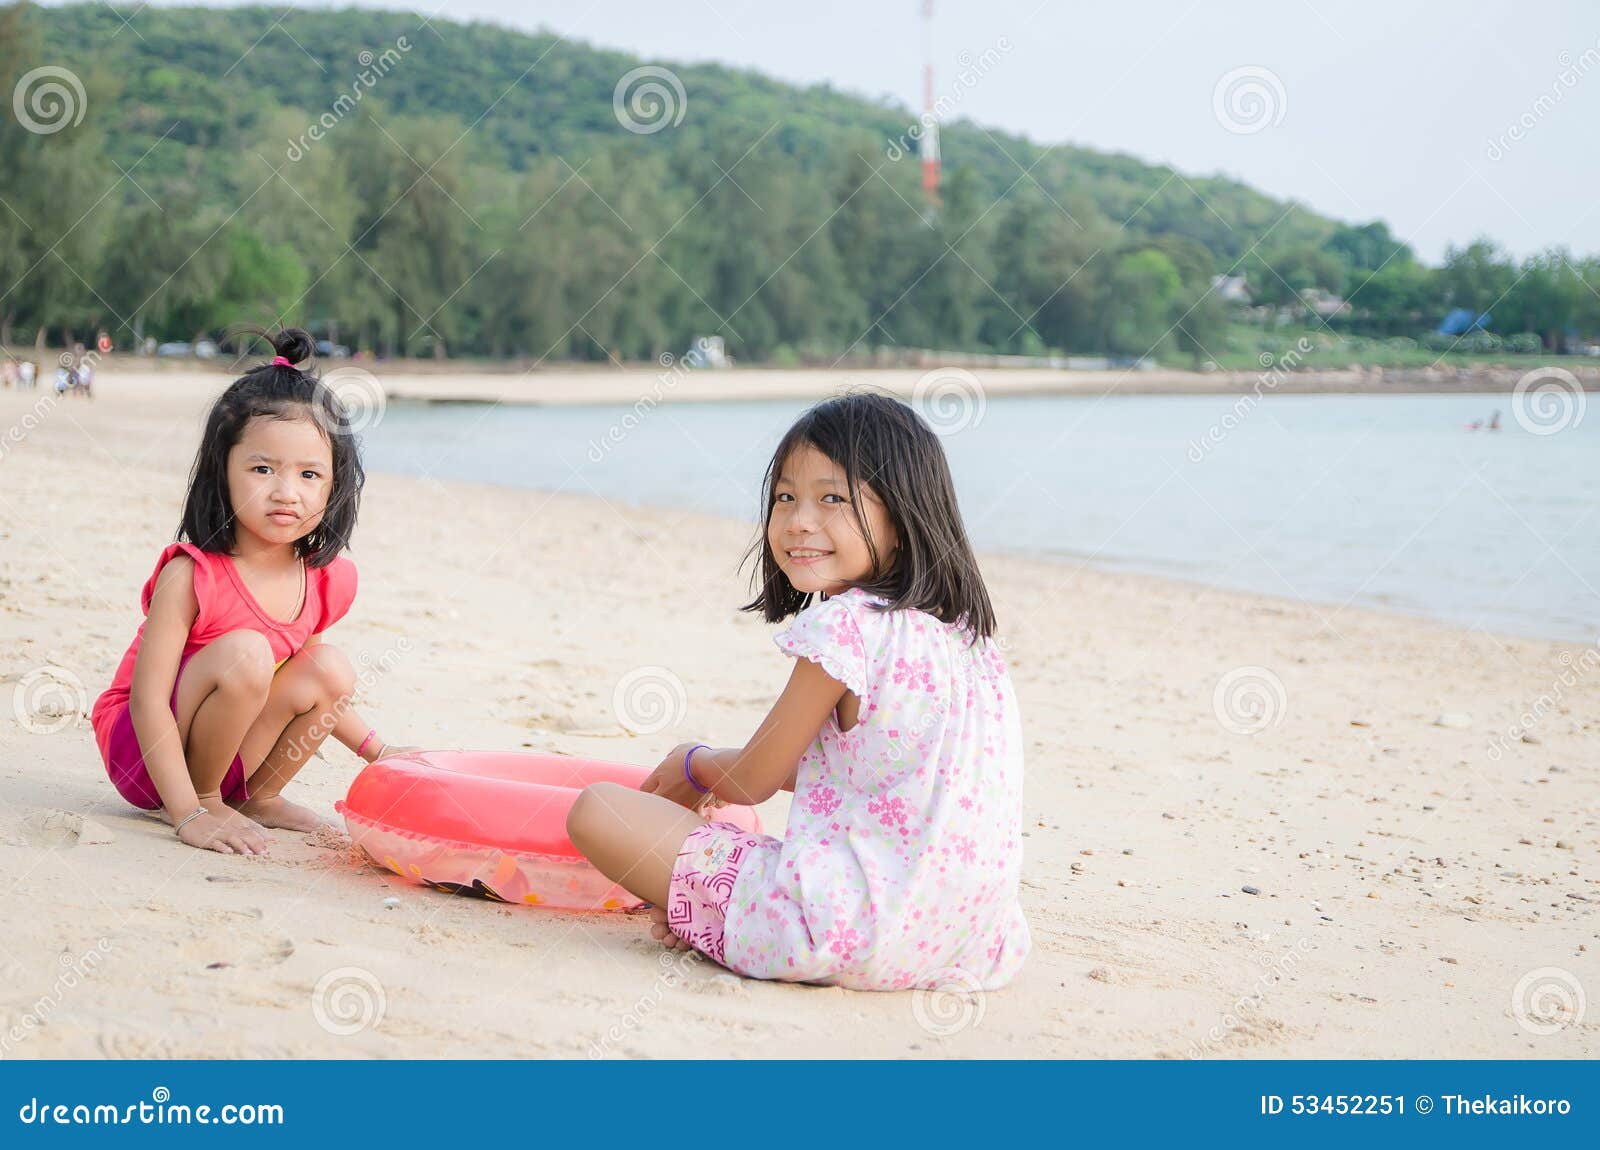 Юные тайцы. Тайская девочка дети. Девочка Таиланда маленькая. Маленькие девочки из Тайланда. Тайские малыши девочки.